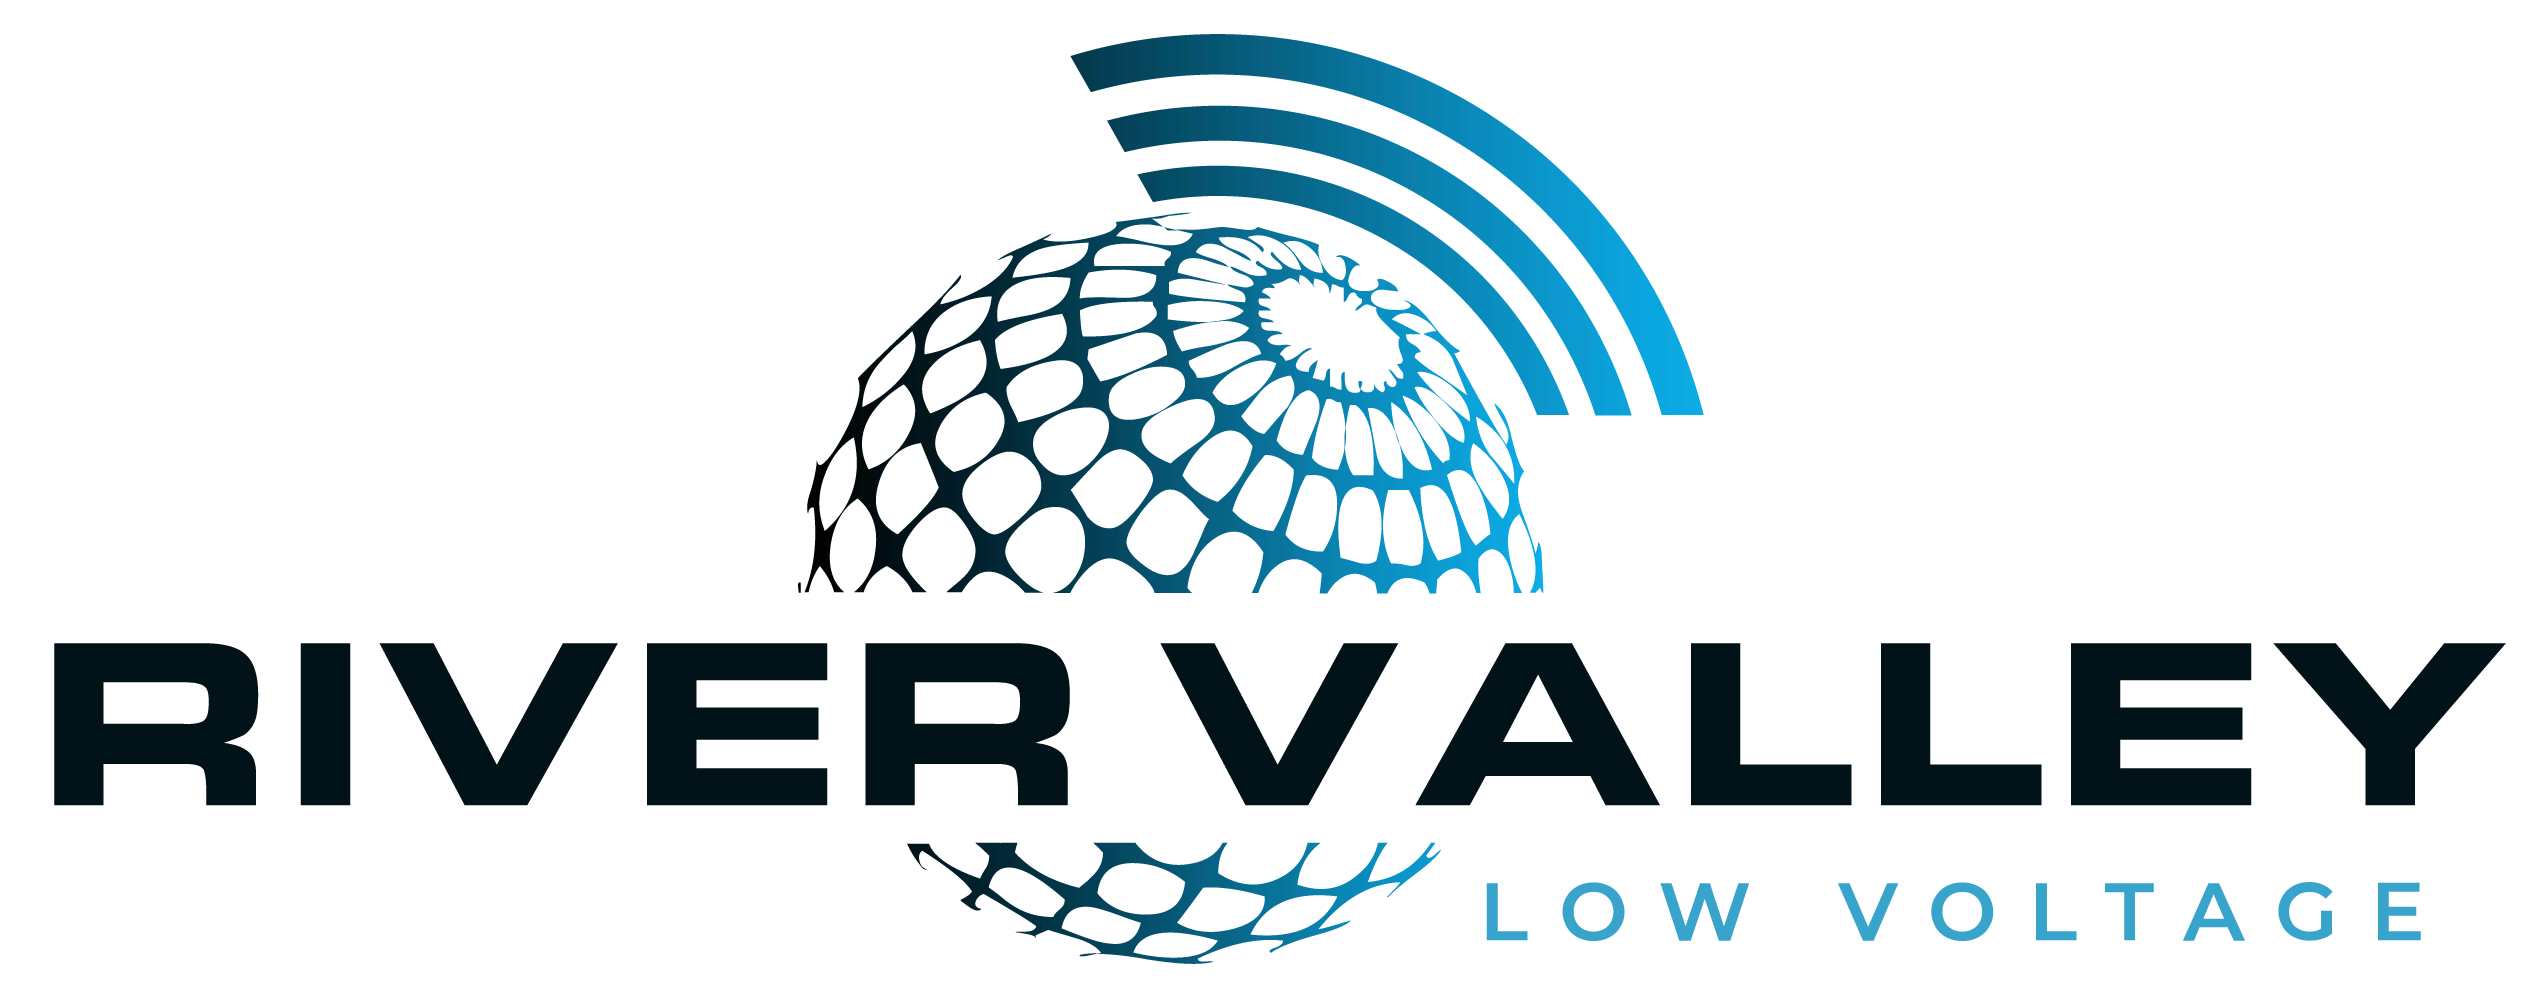 River Valley Low Voltage